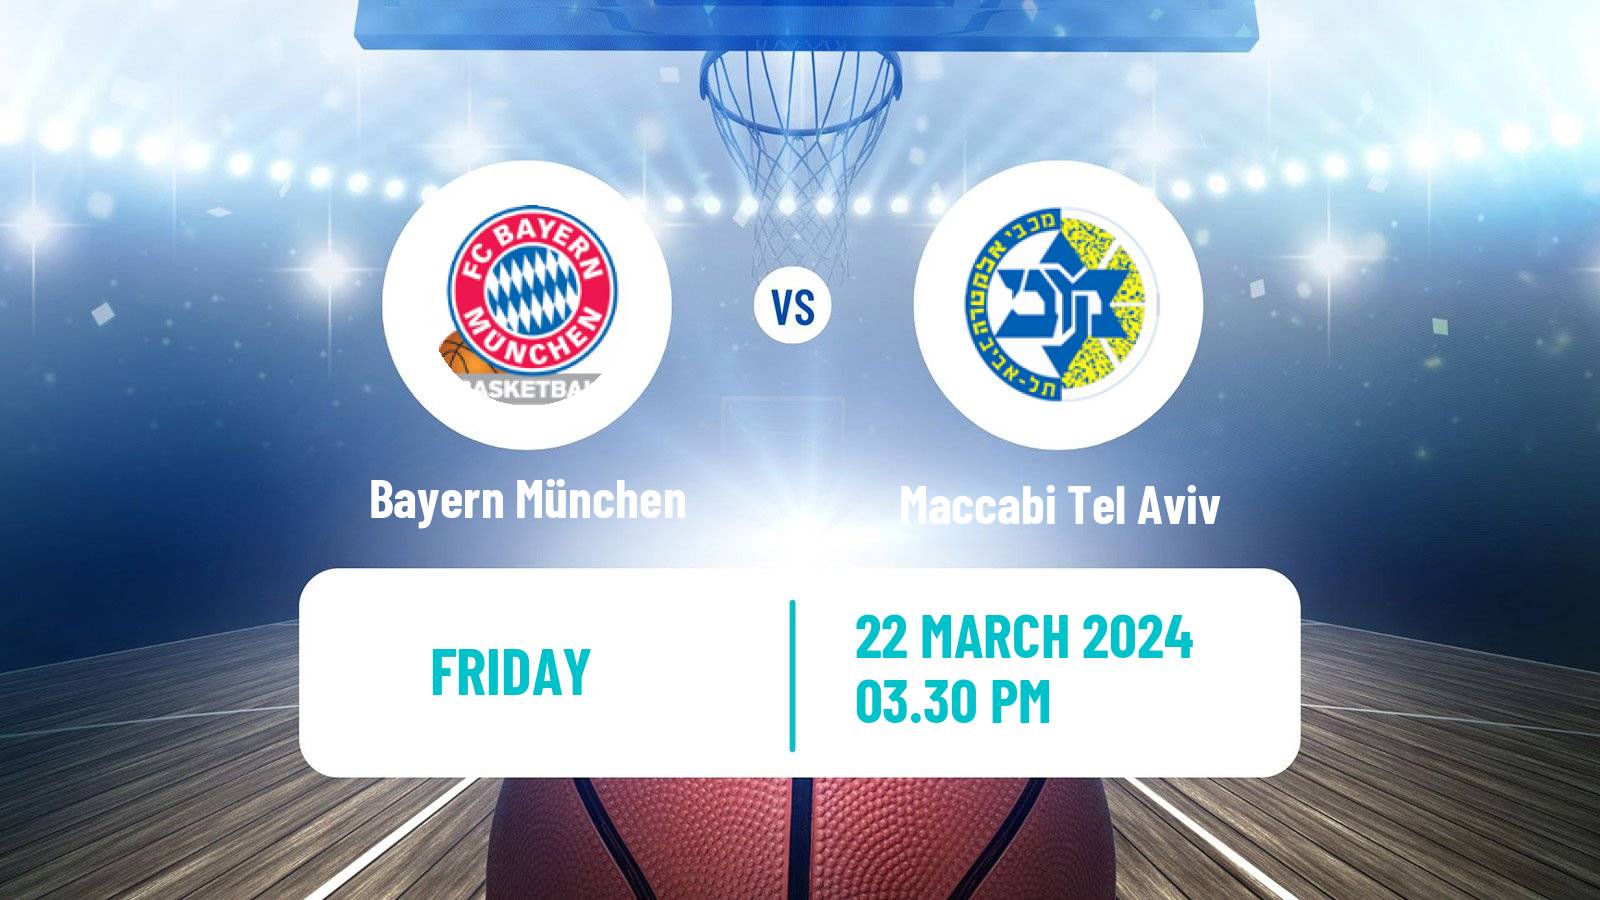 Basketball Euroleague Bayern München - Maccabi Tel Aviv